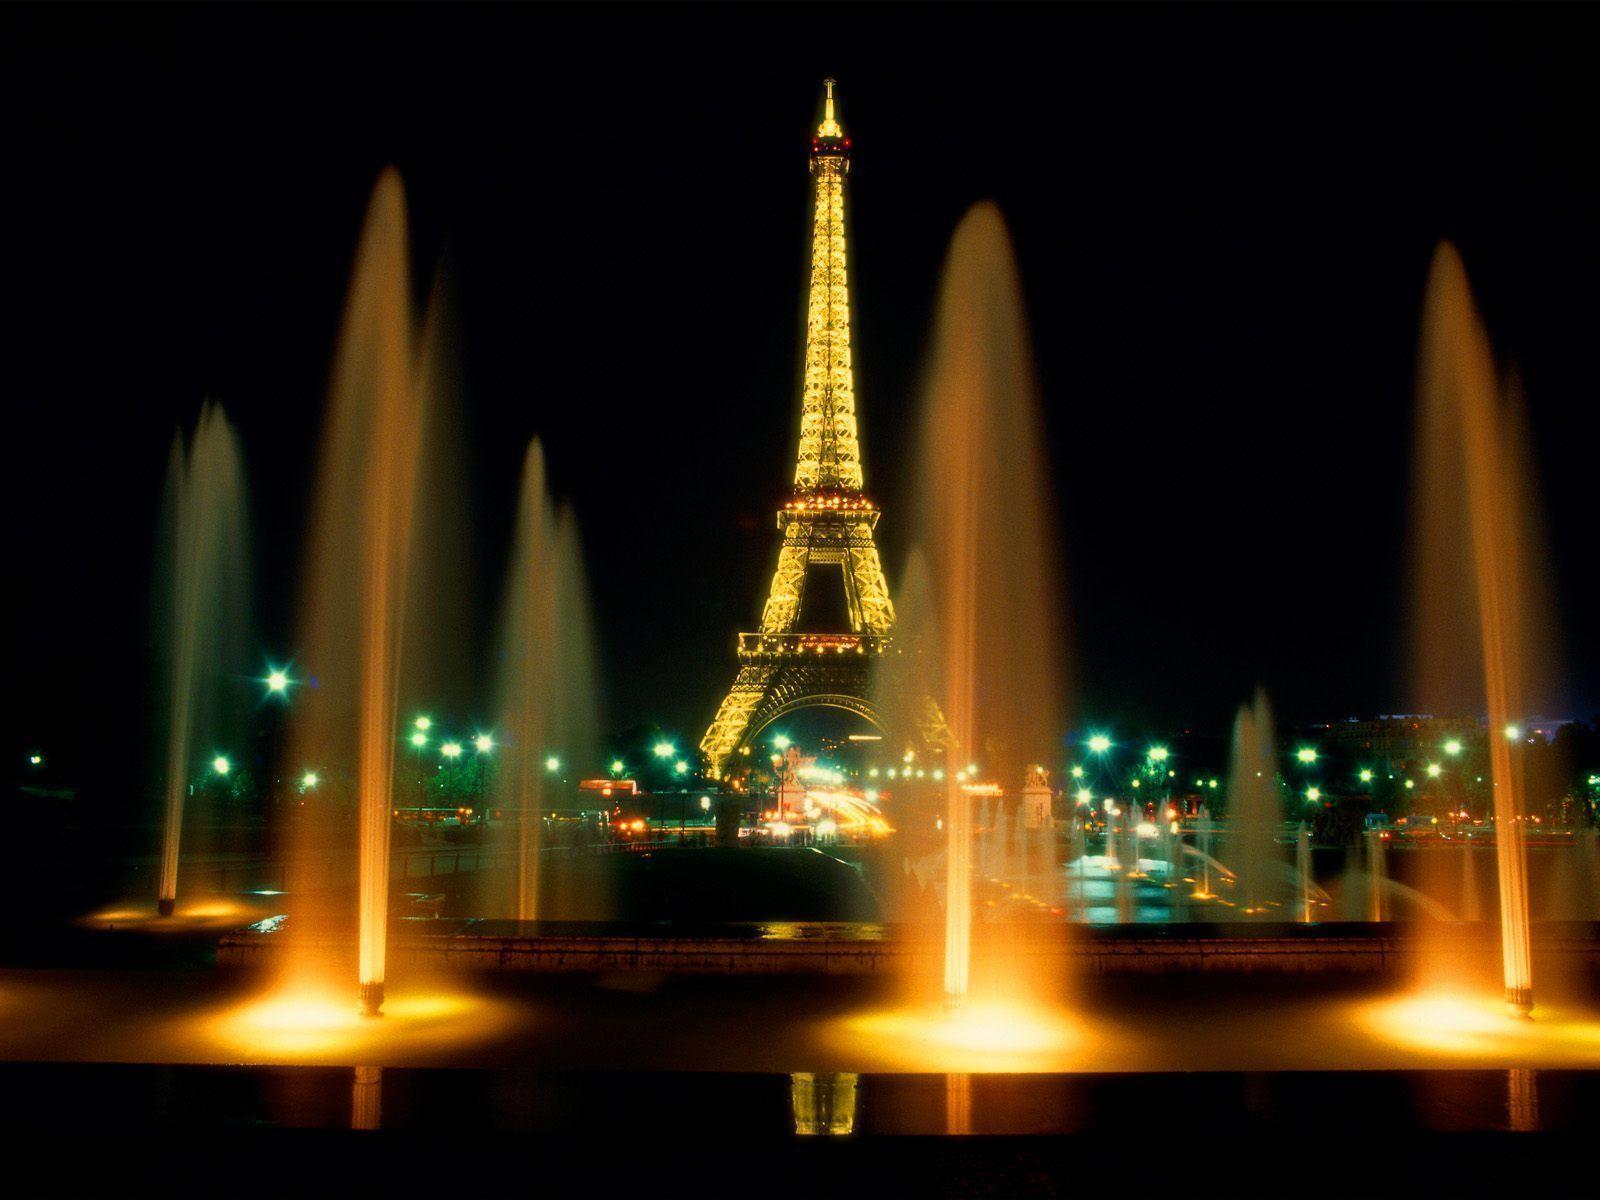 Desktop Wallpaper · Gallery · Travels · Eiffel Tower, Night. Free